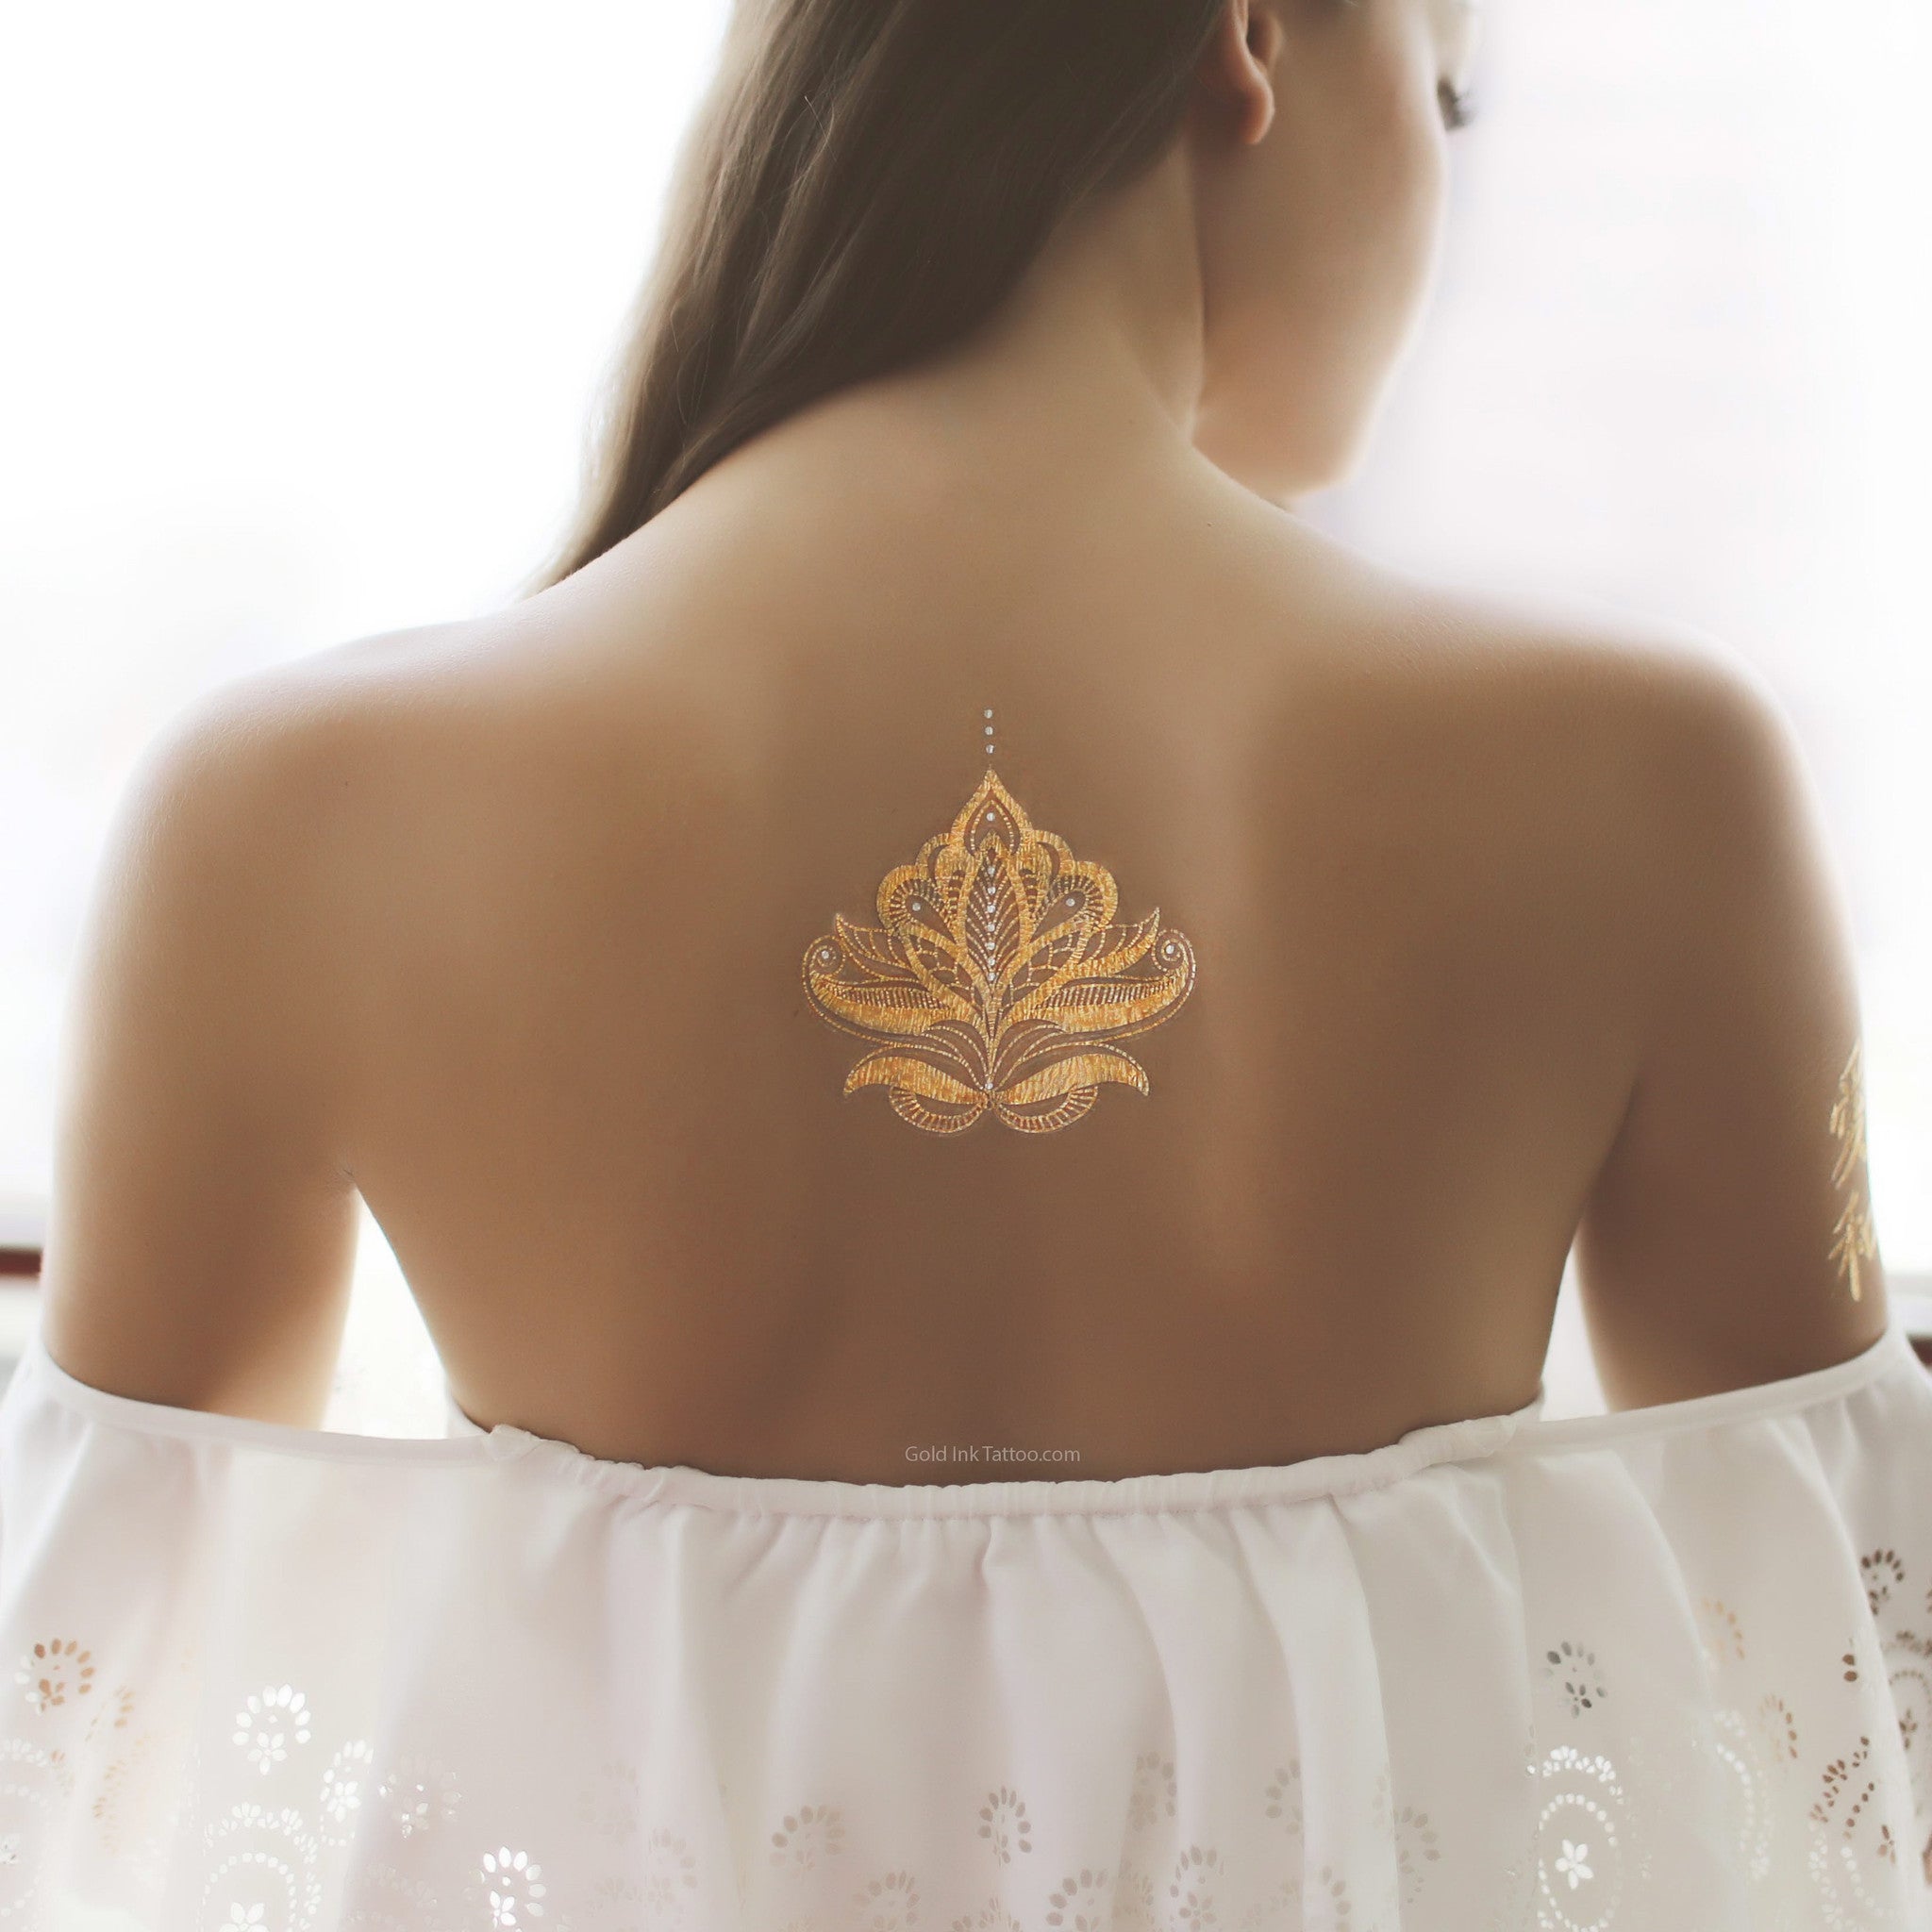 Gold Henna Flash Metallic Tattoo | Gold Ink Tattoo